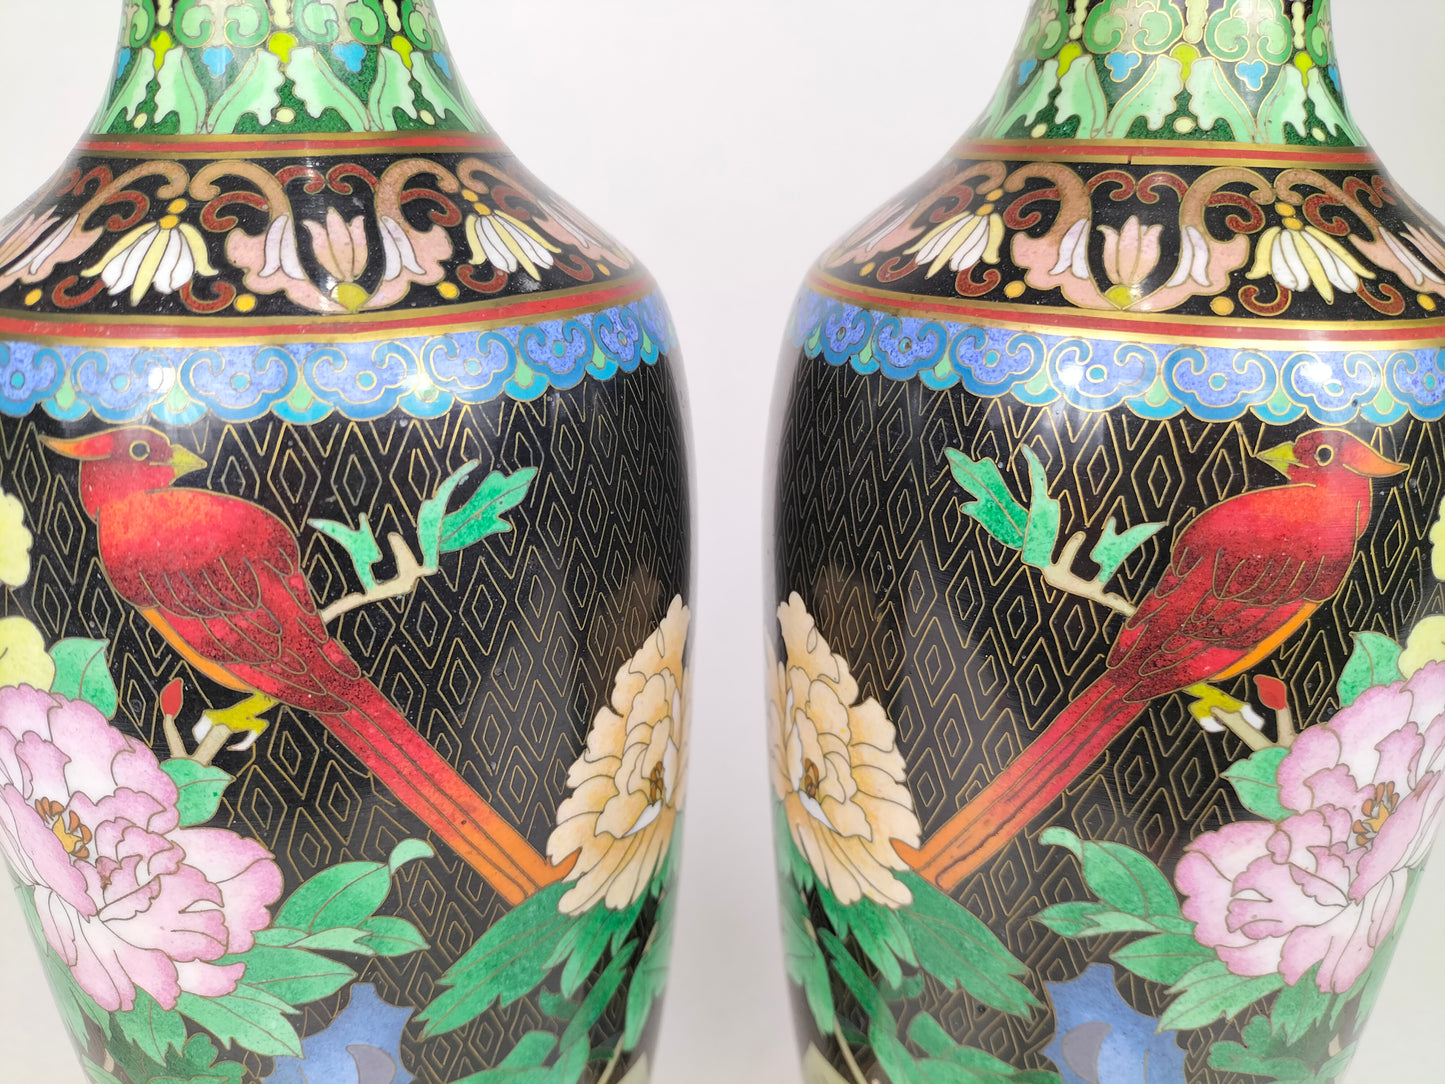 Cặp bình cloisonne Trung Quốc được trang trí bằng chim và hoa // thế kỷ 20